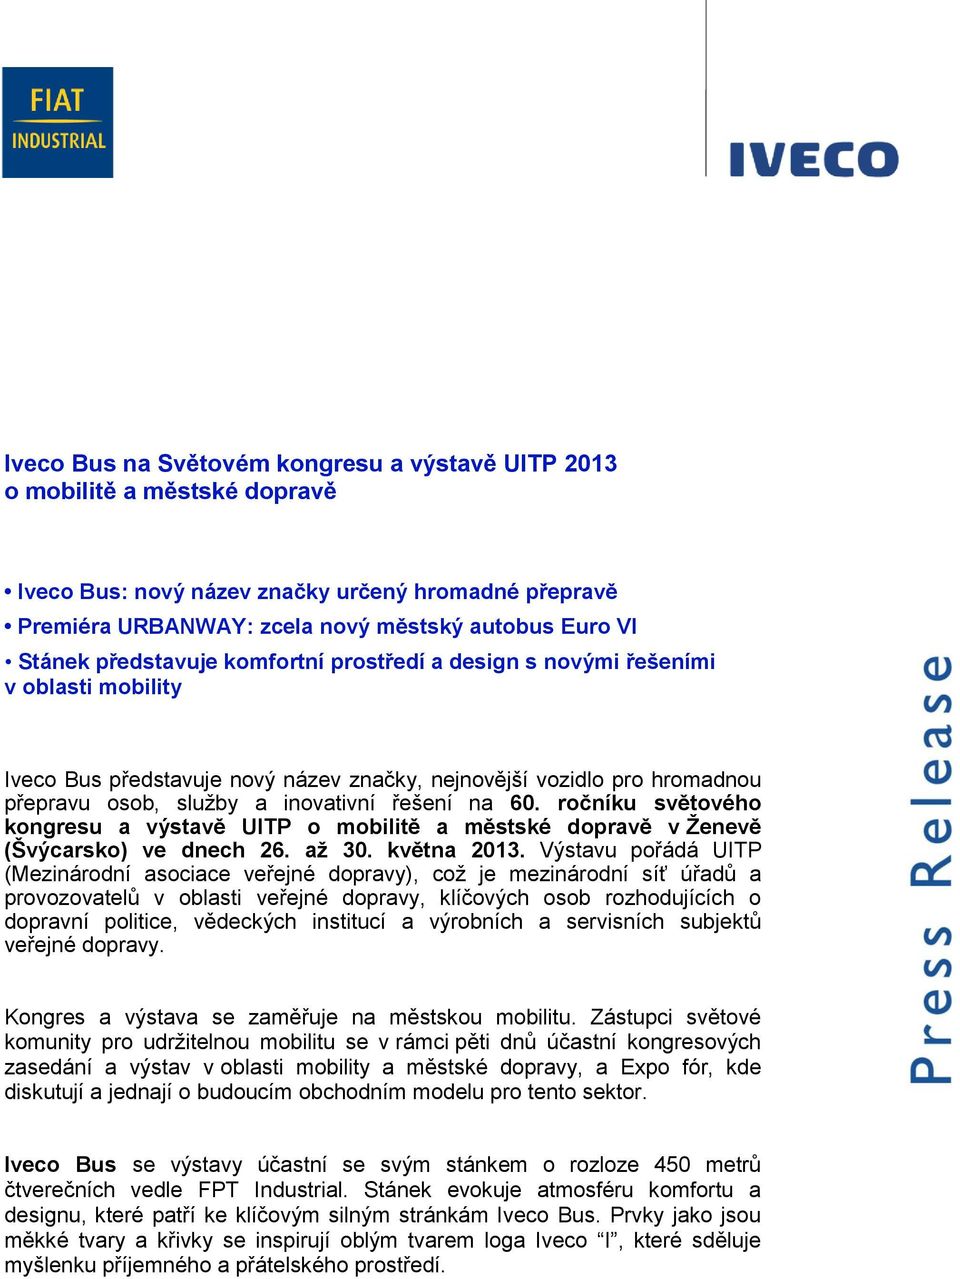 ročníku světového kongresu a výstavě UITP o mobilitě a městské dopravě v Ţenevě (Švýcarsko) ve dnech 26. aţ 30. května 2013.